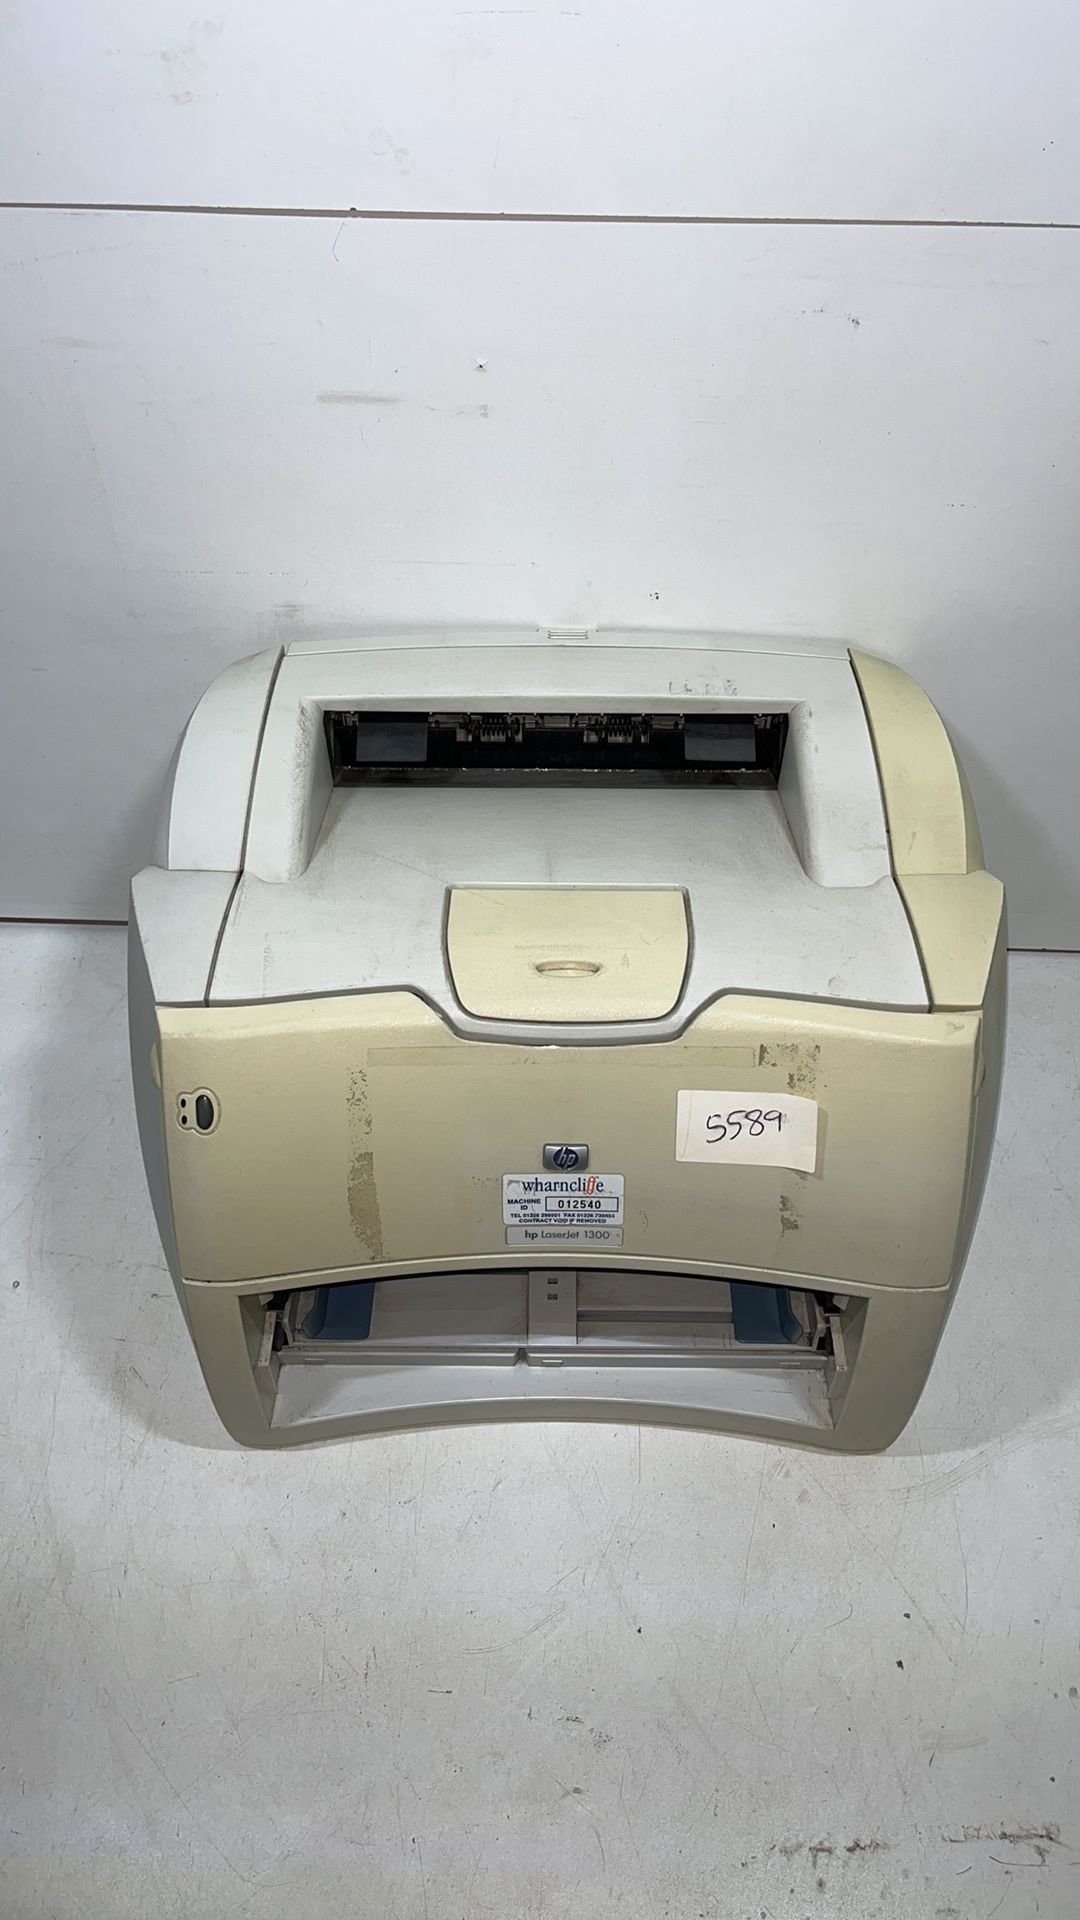 HP LaserJet 1300 Printer - Image 2 of 4